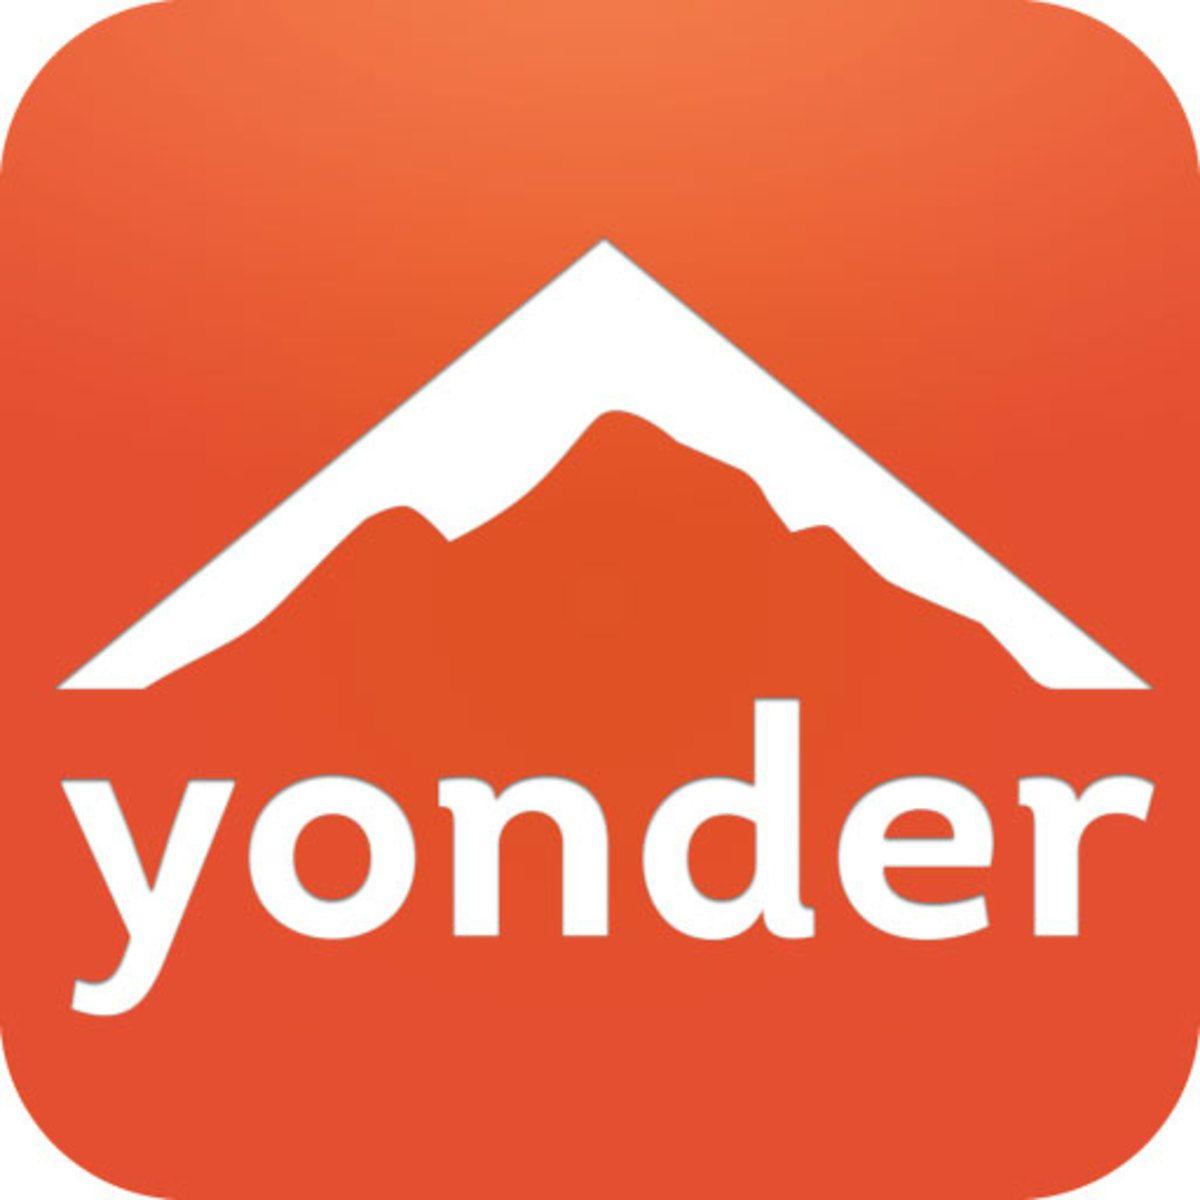 Yonder App Logo - Yonder 2.0 App Released for iOS 7 - SNEWS